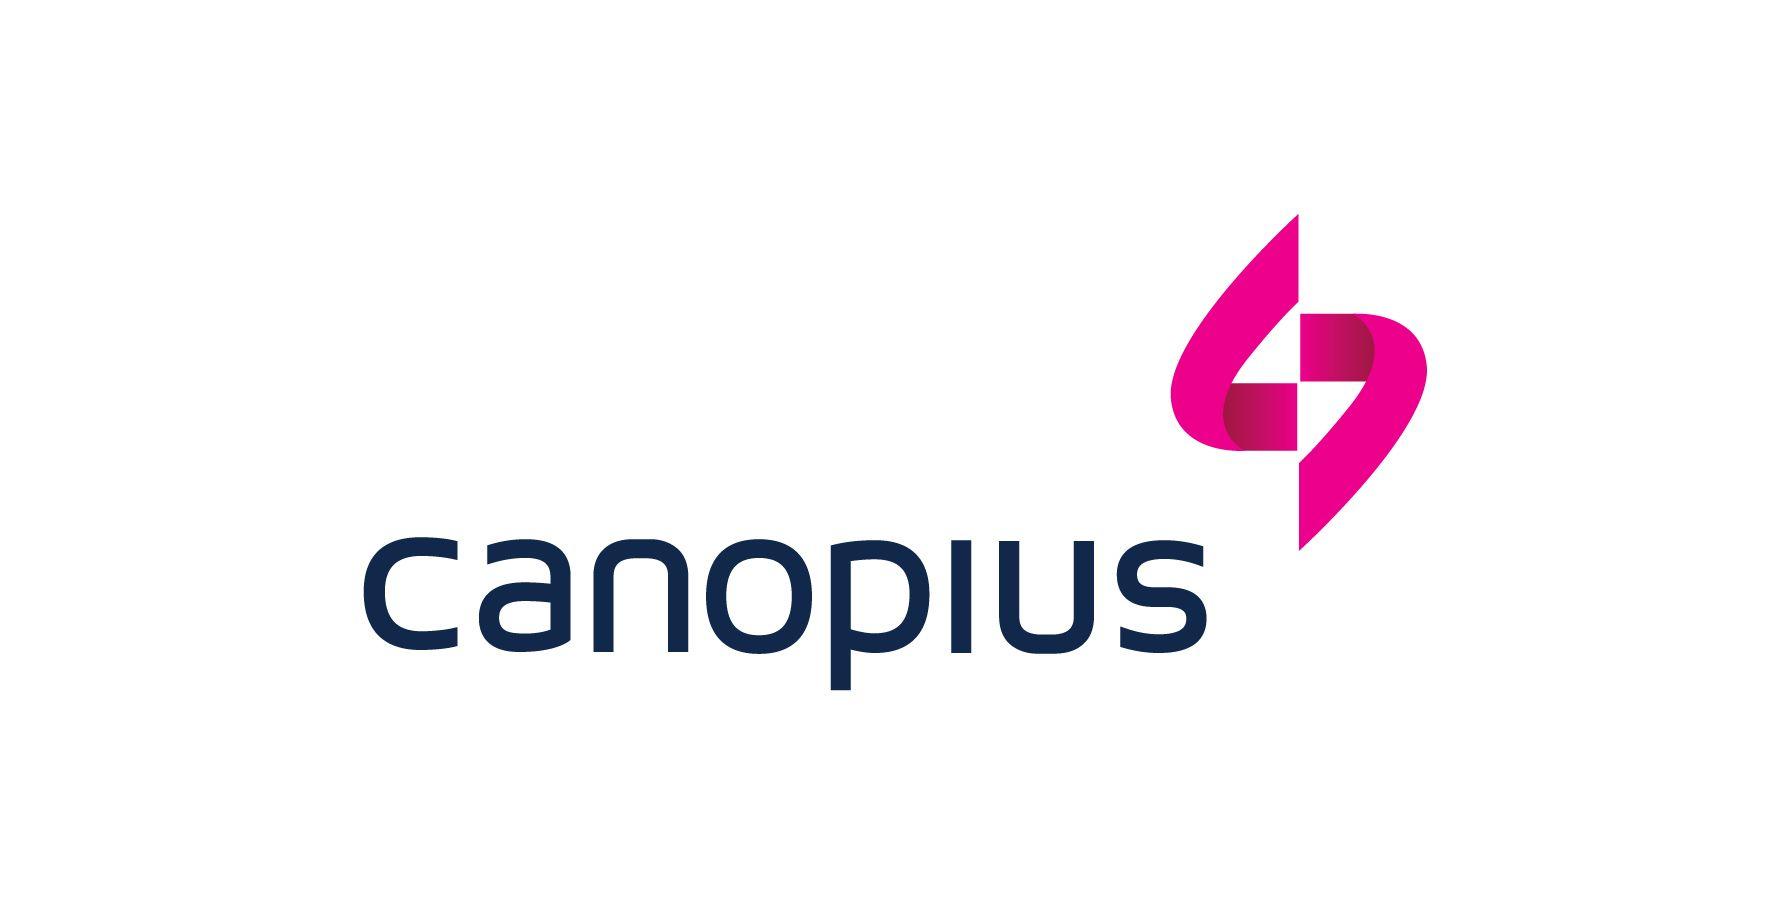 Google Main Logo - Canopius 1 main logo - D&A Media